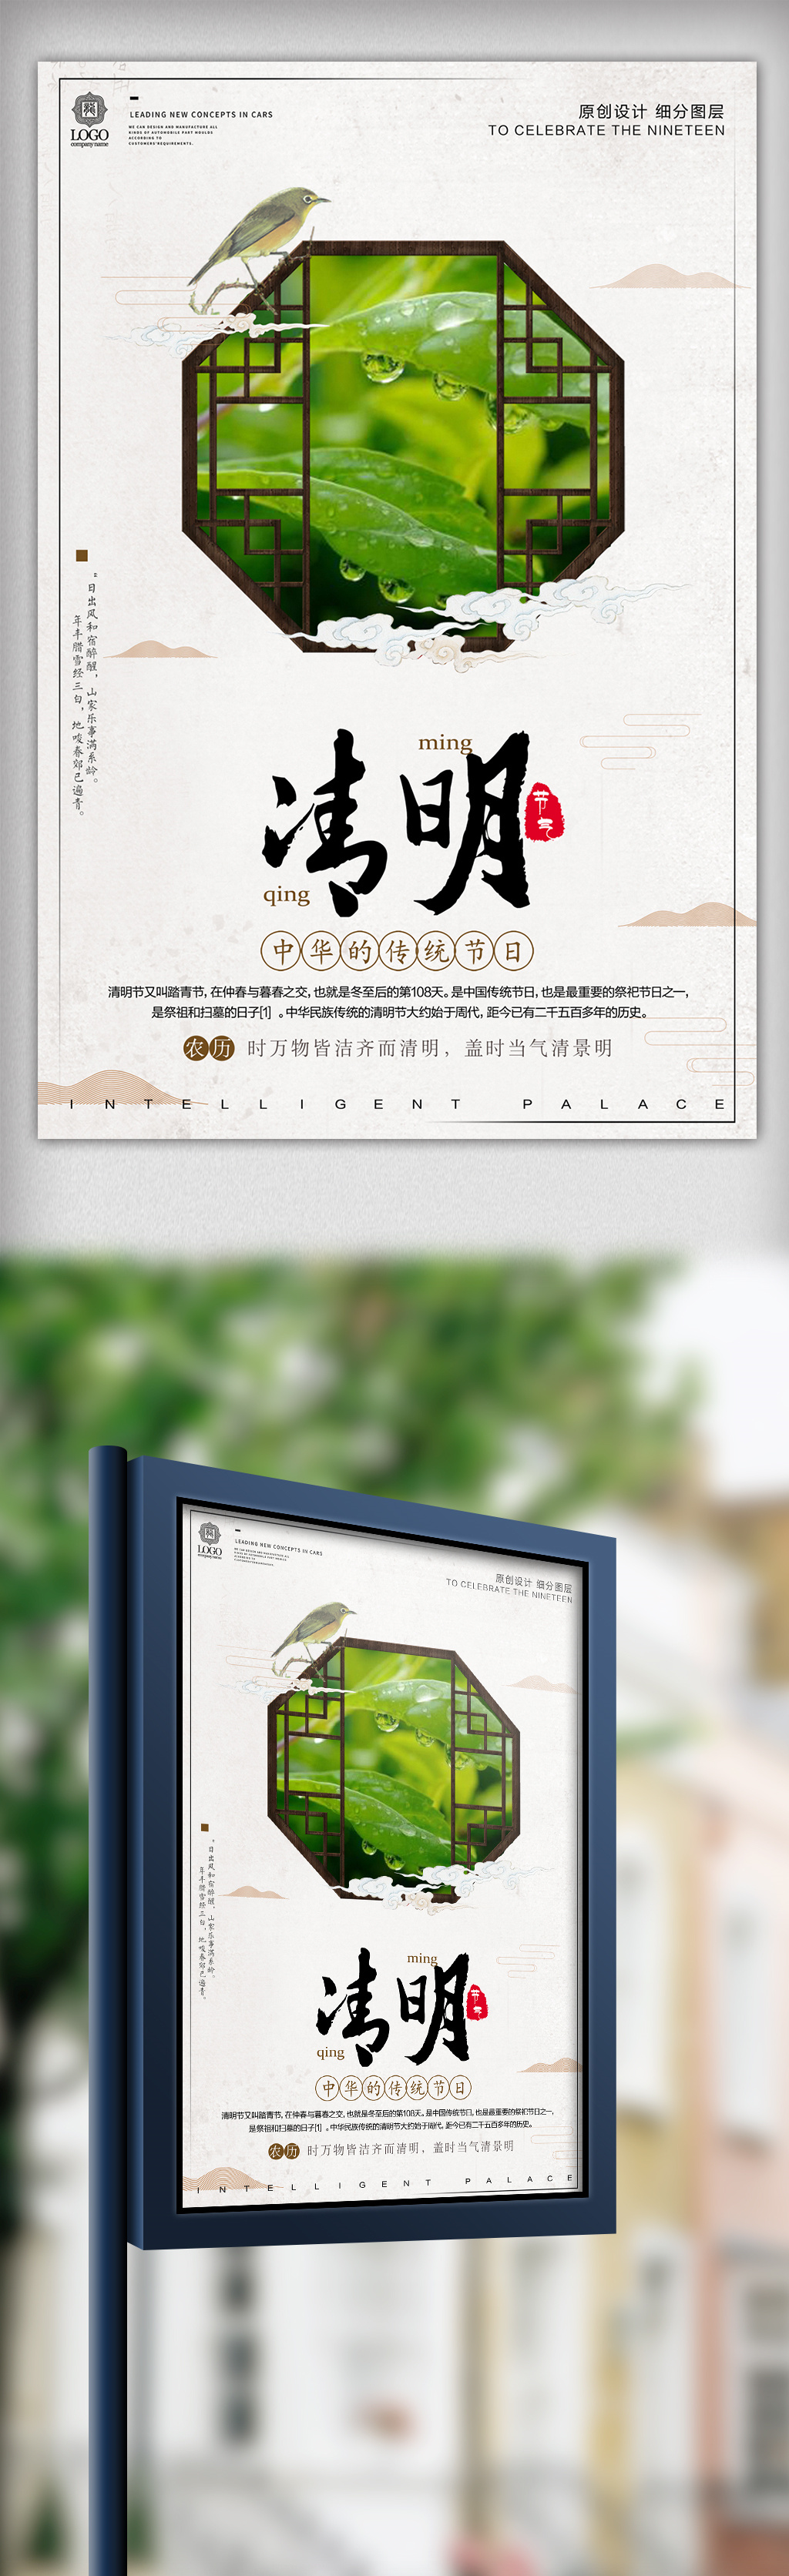 中式風格清明節宣傳海報設計